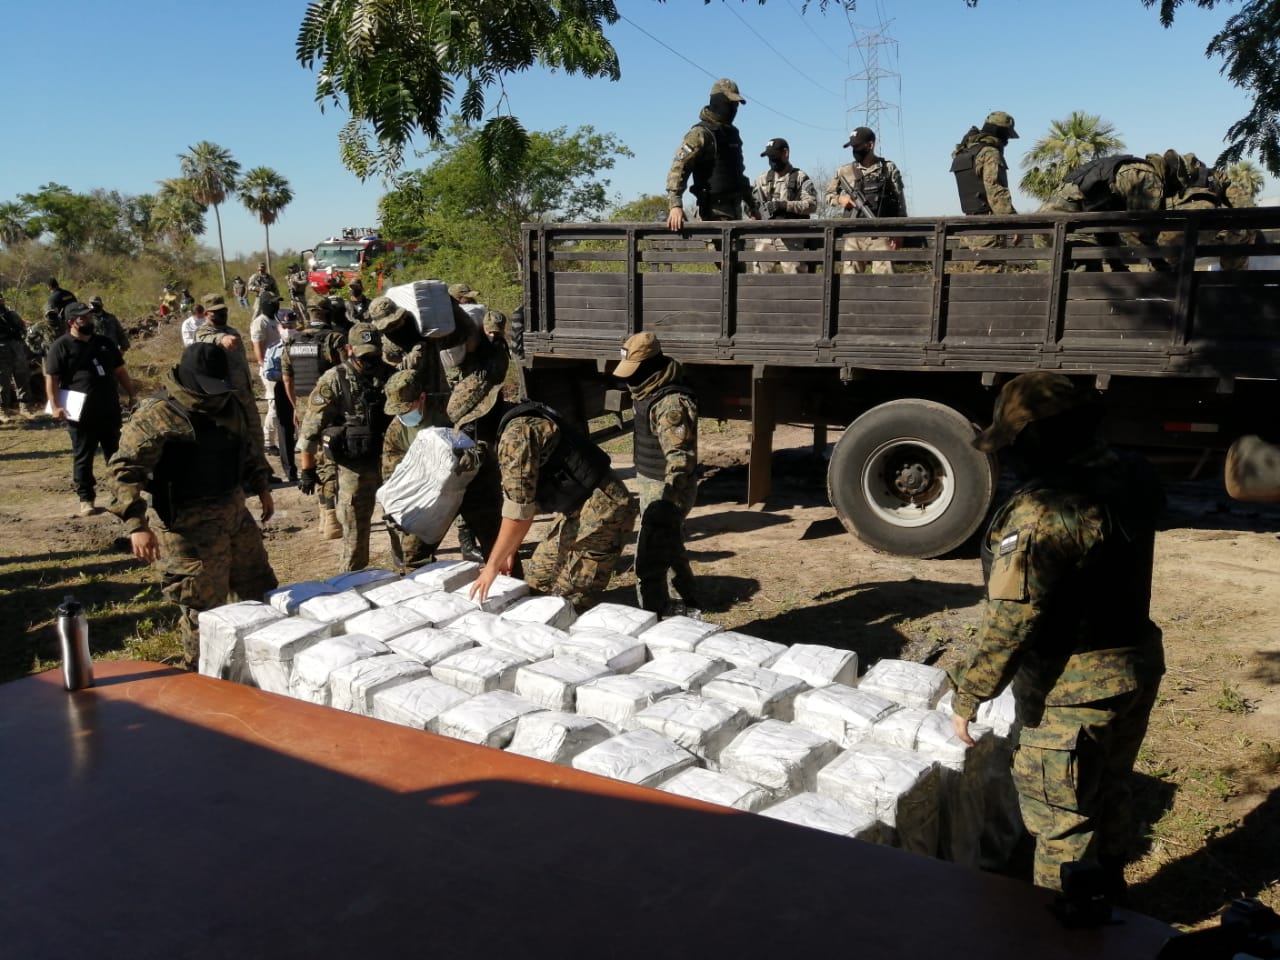 En Chaco'i serán incinerados los 2.906 kilos de cocaína incautados en Villeta. Foto: Wilma Gaona (cronista del Grupo JBB).